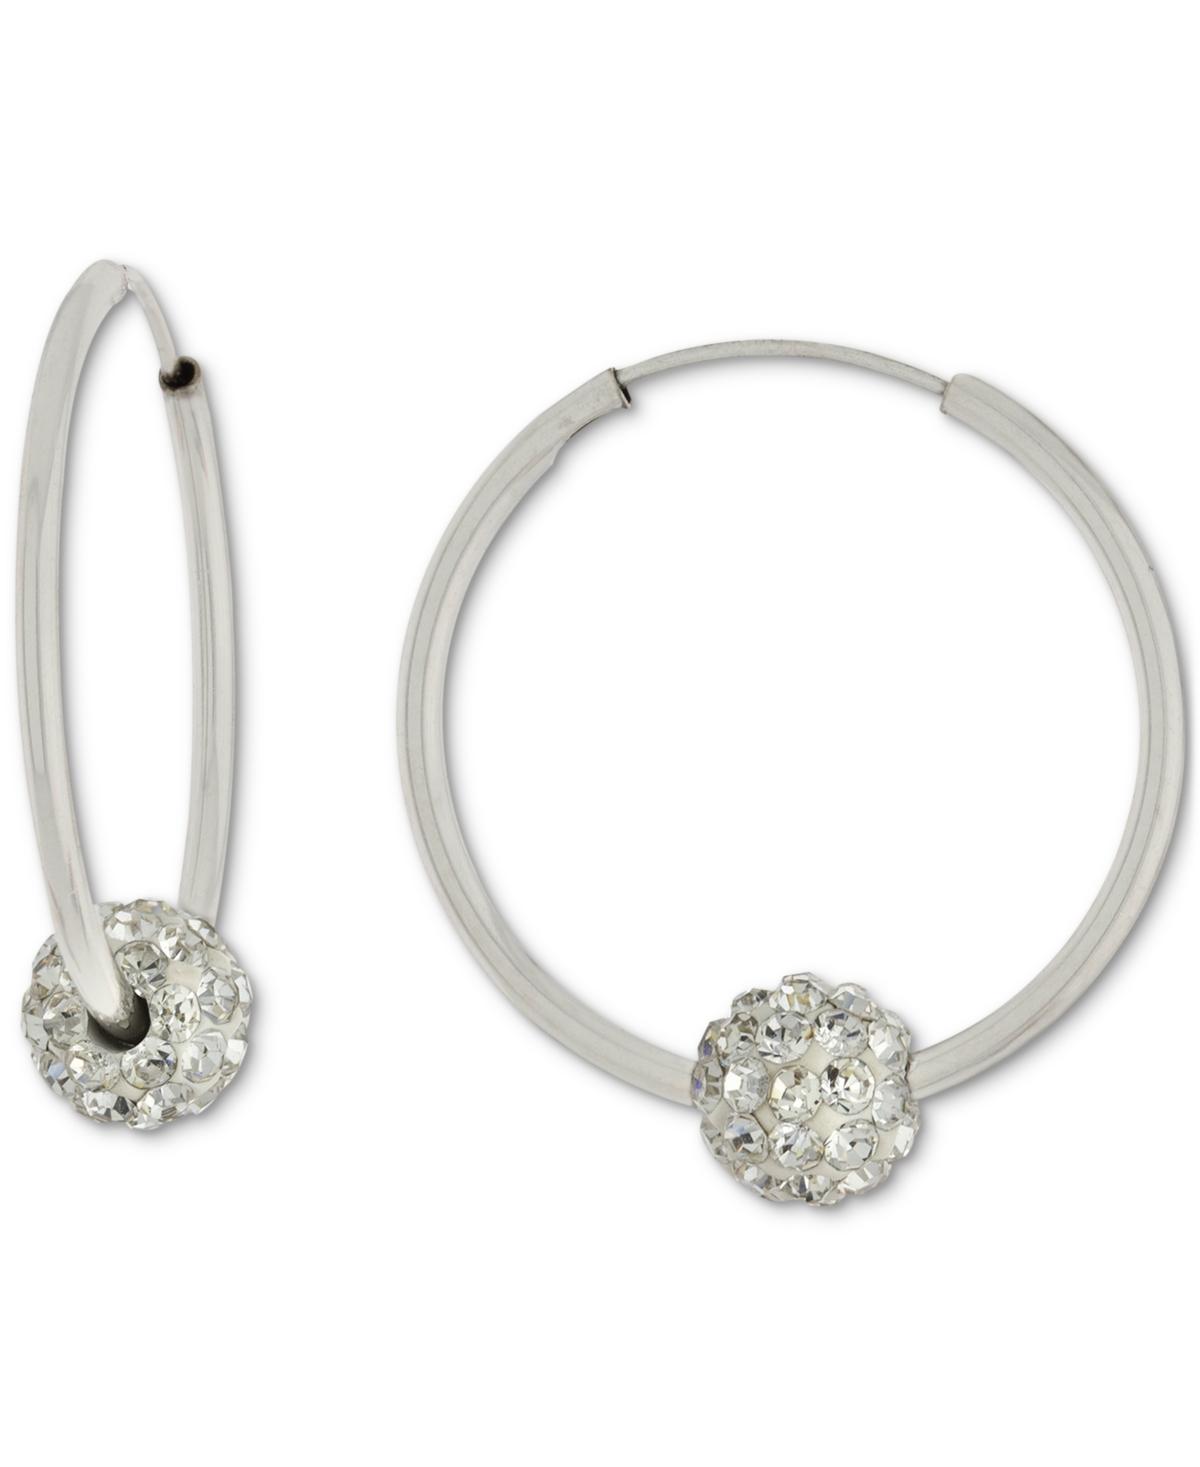 Giani Bernini Crystal Ball Small Hoop Earrings in Metallic